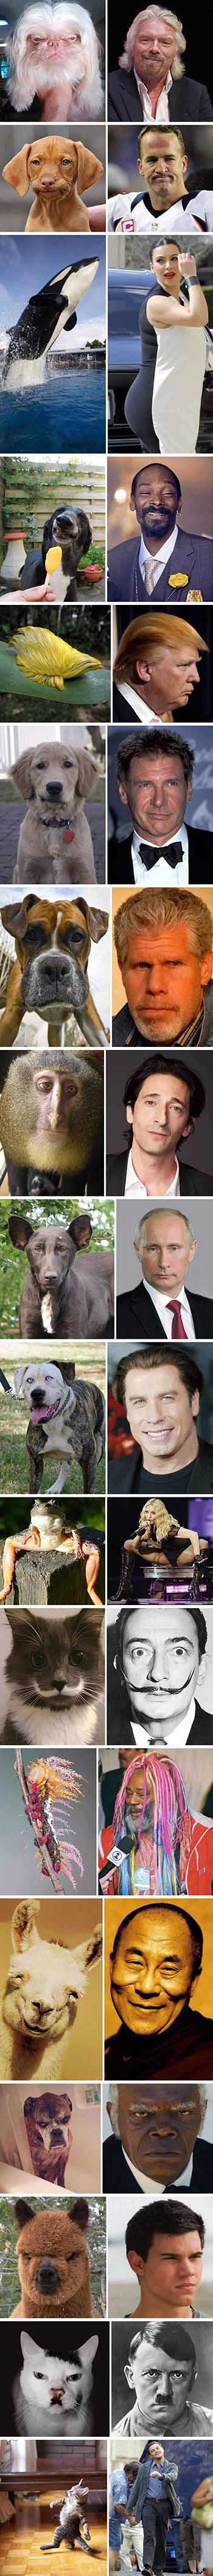 Obrázek celebrities dogs lookalike